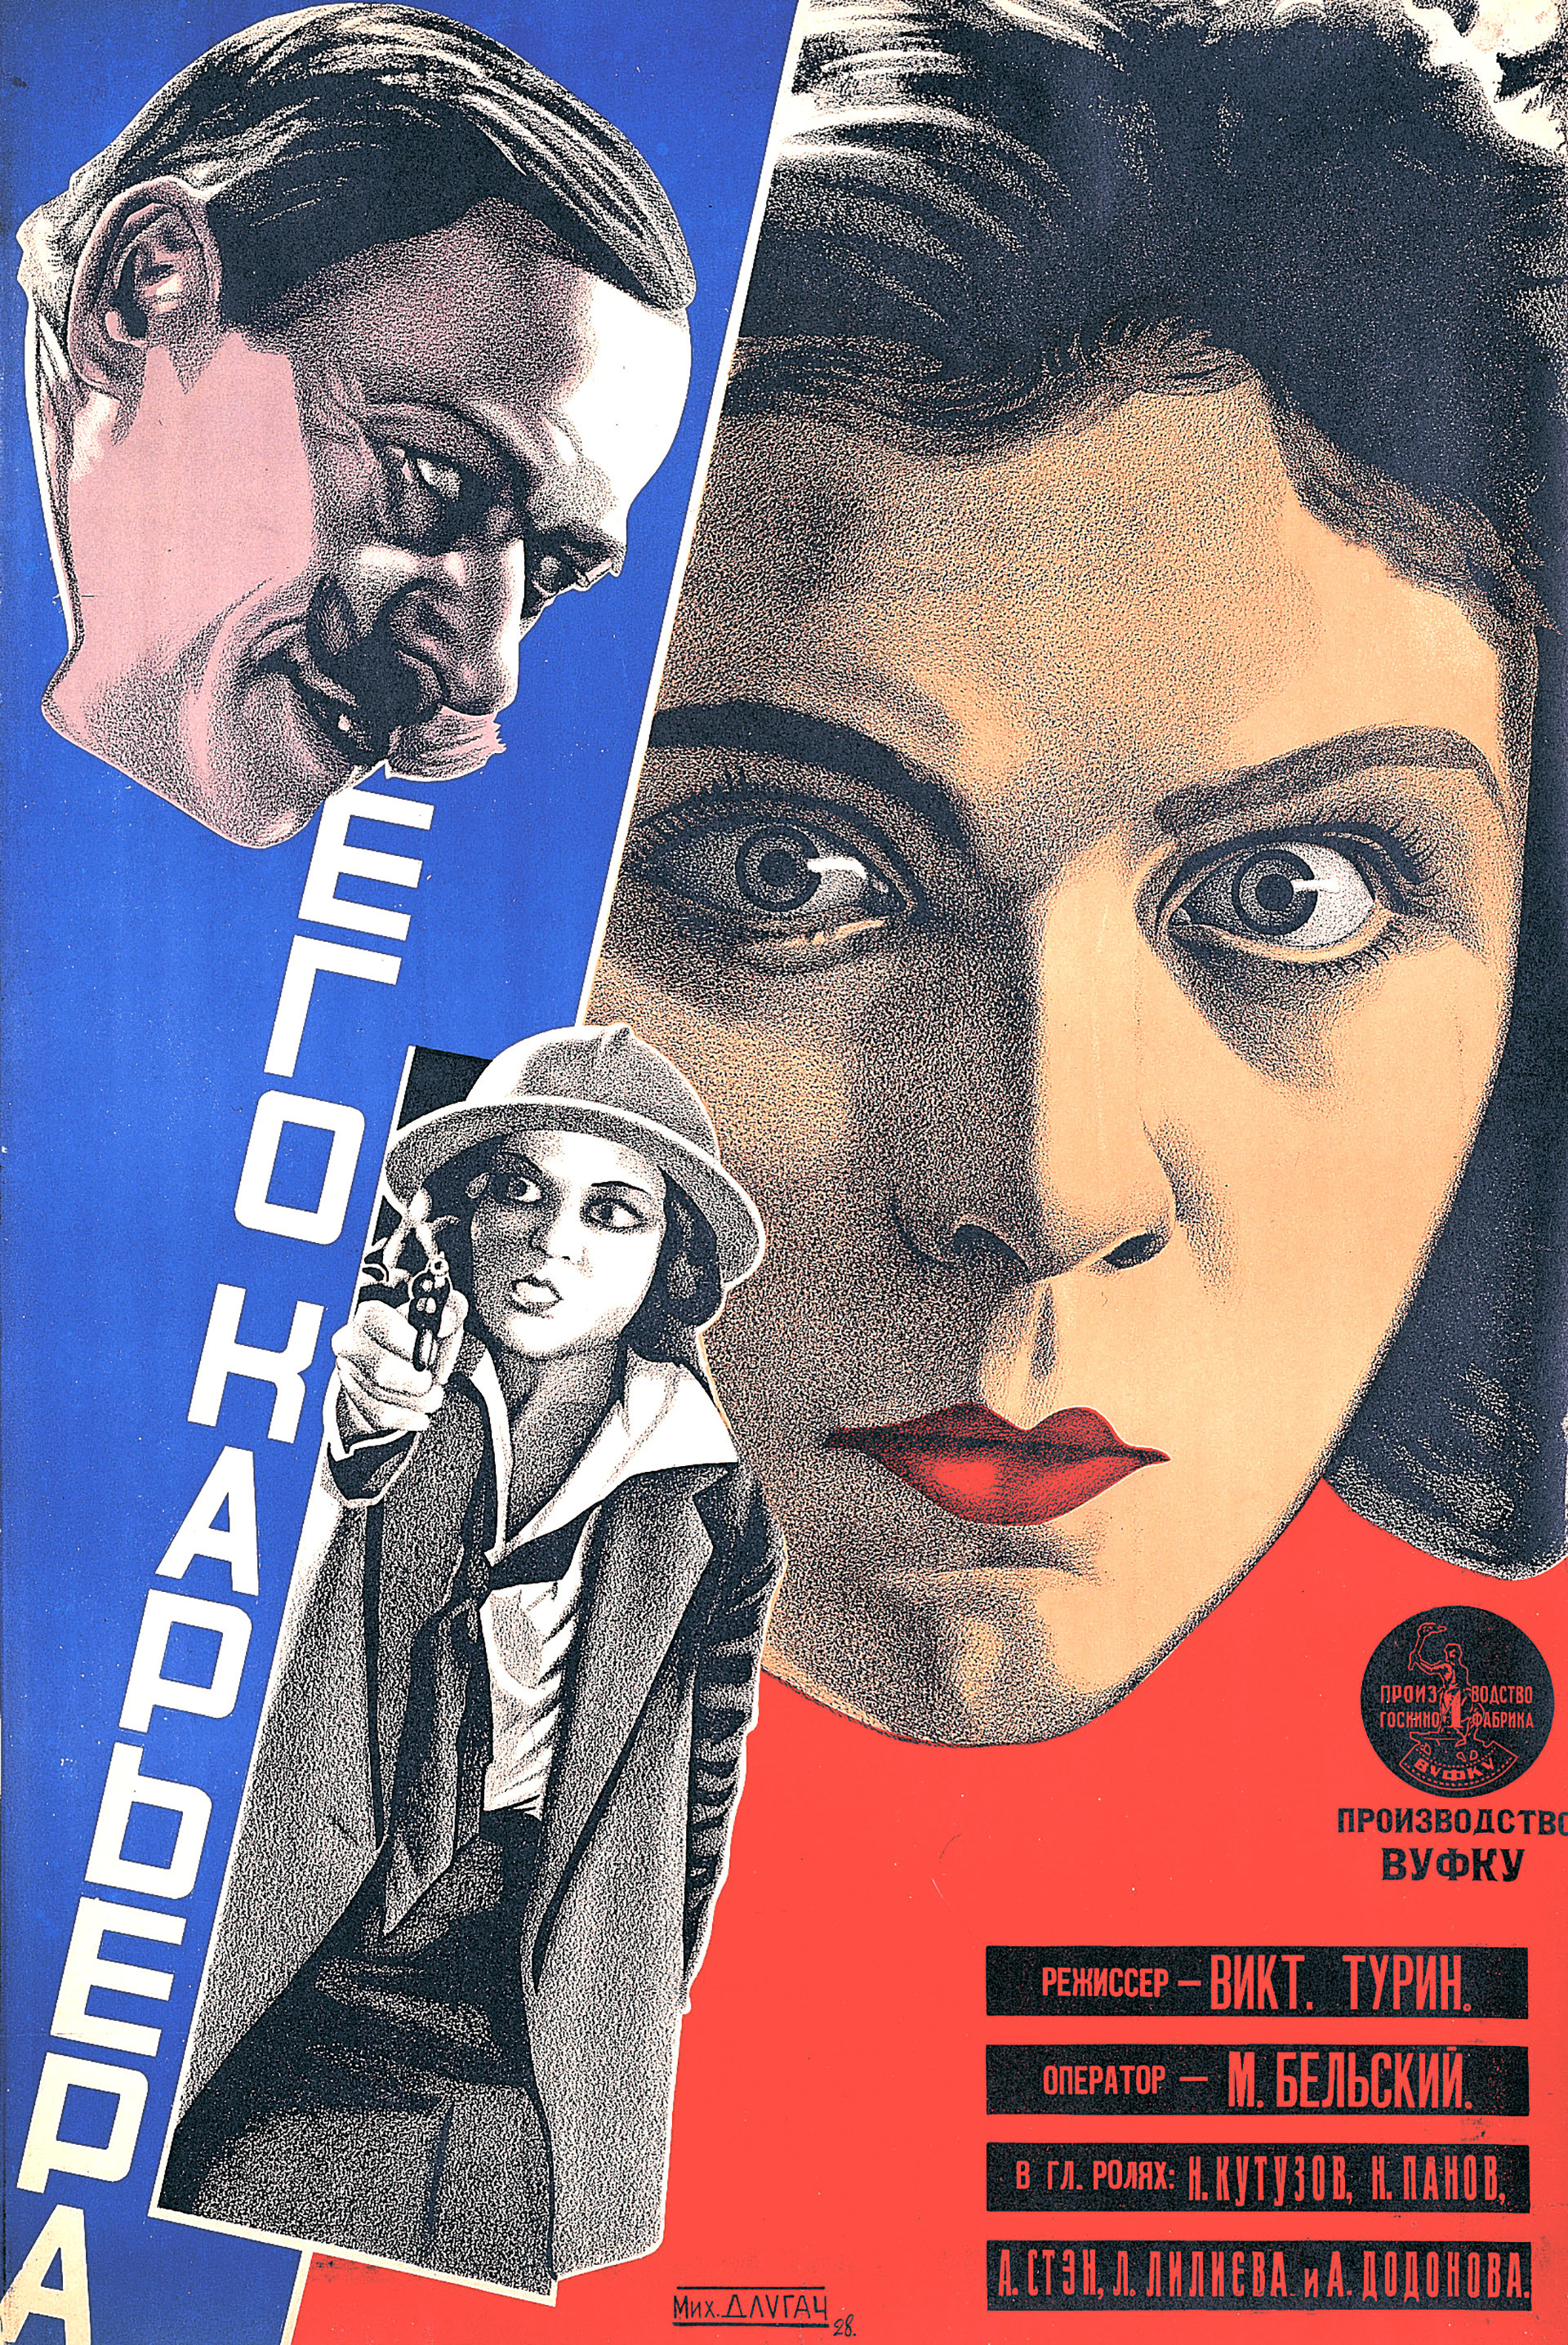 Michail Dlugatsch, Filmposter for „Seine Karriere“, 1928